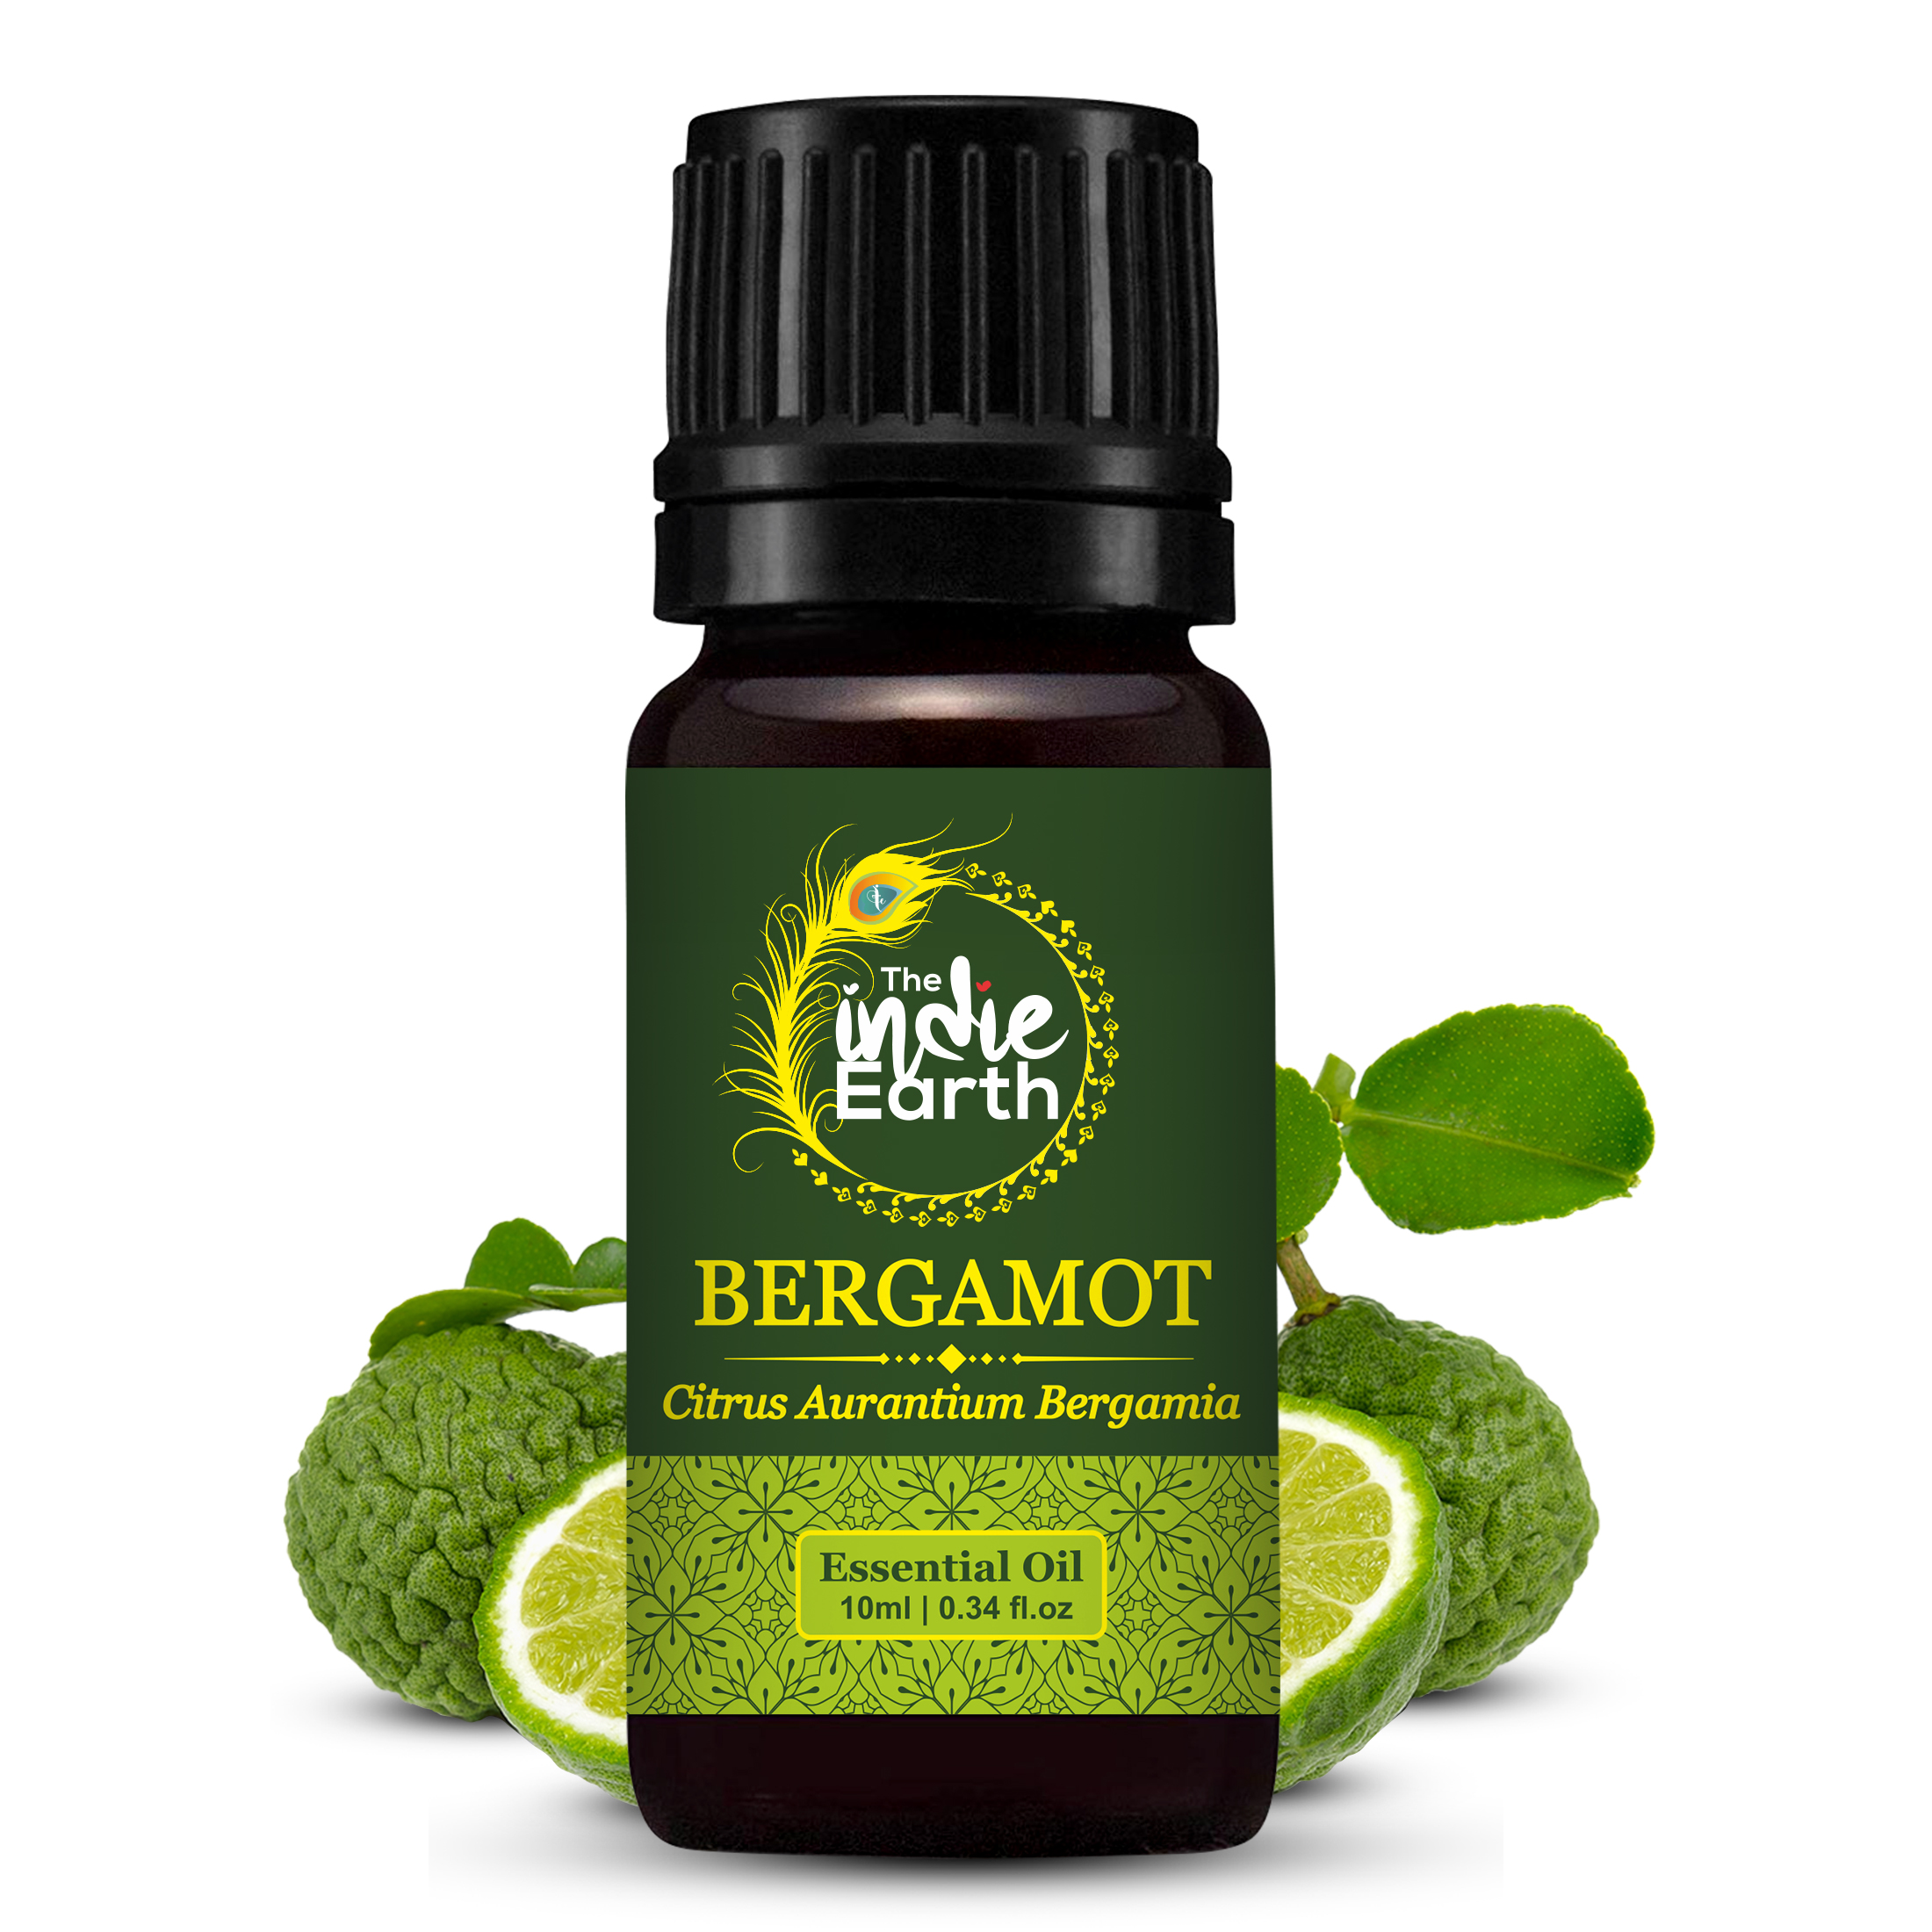 Bergamot Essential Oil benefits